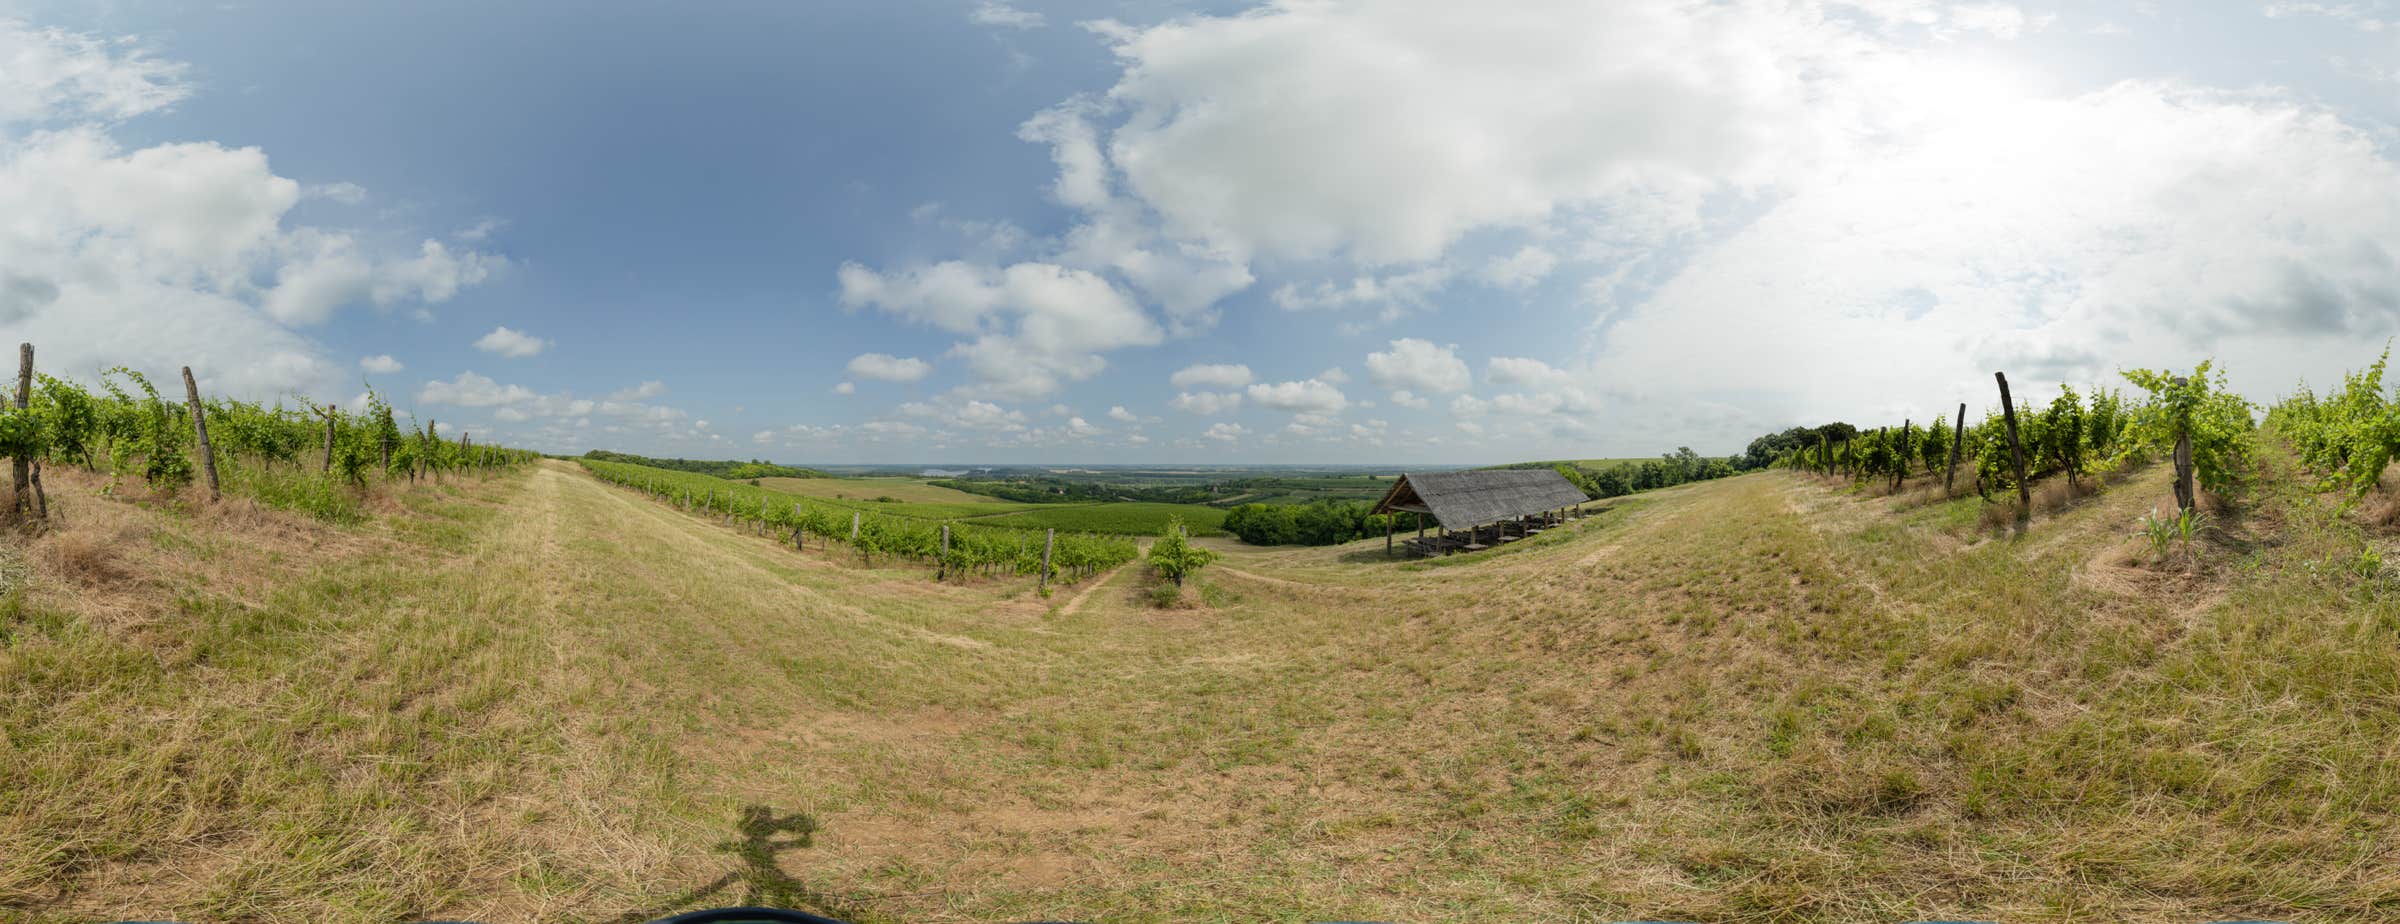 Panoramska slika 360° prikazuje vinograd z več vrstami vinske trte in pokritim prostorom za sedenje. Slika je povezana s panoramskim ogledom.